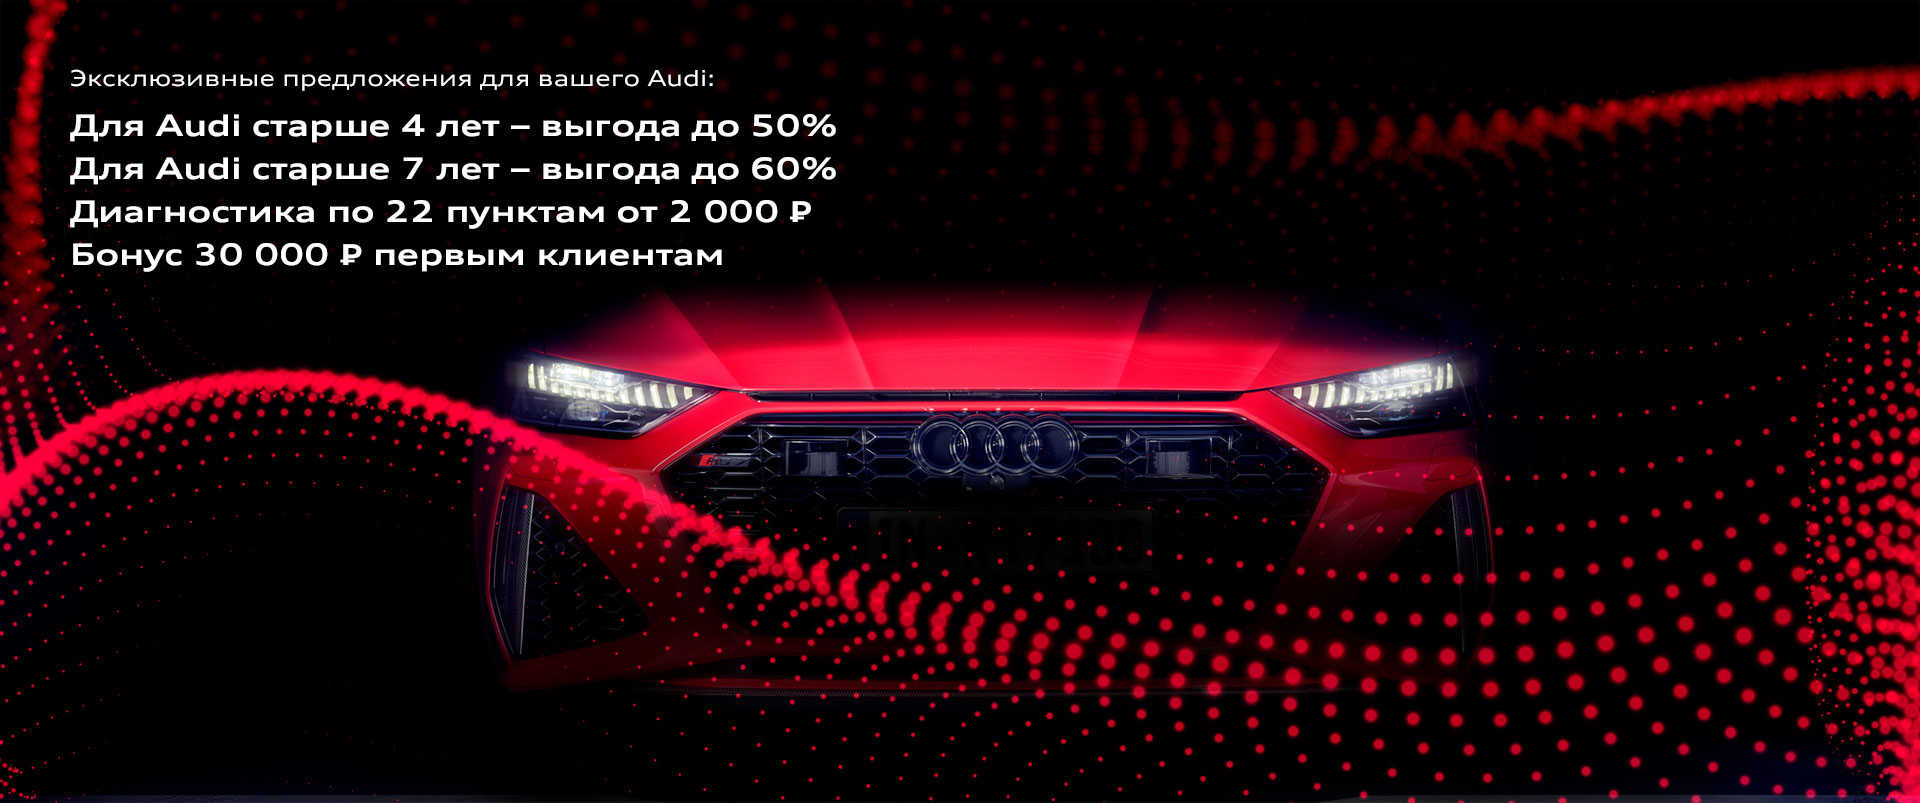 Эксклюзивное предложение для вашего Audi